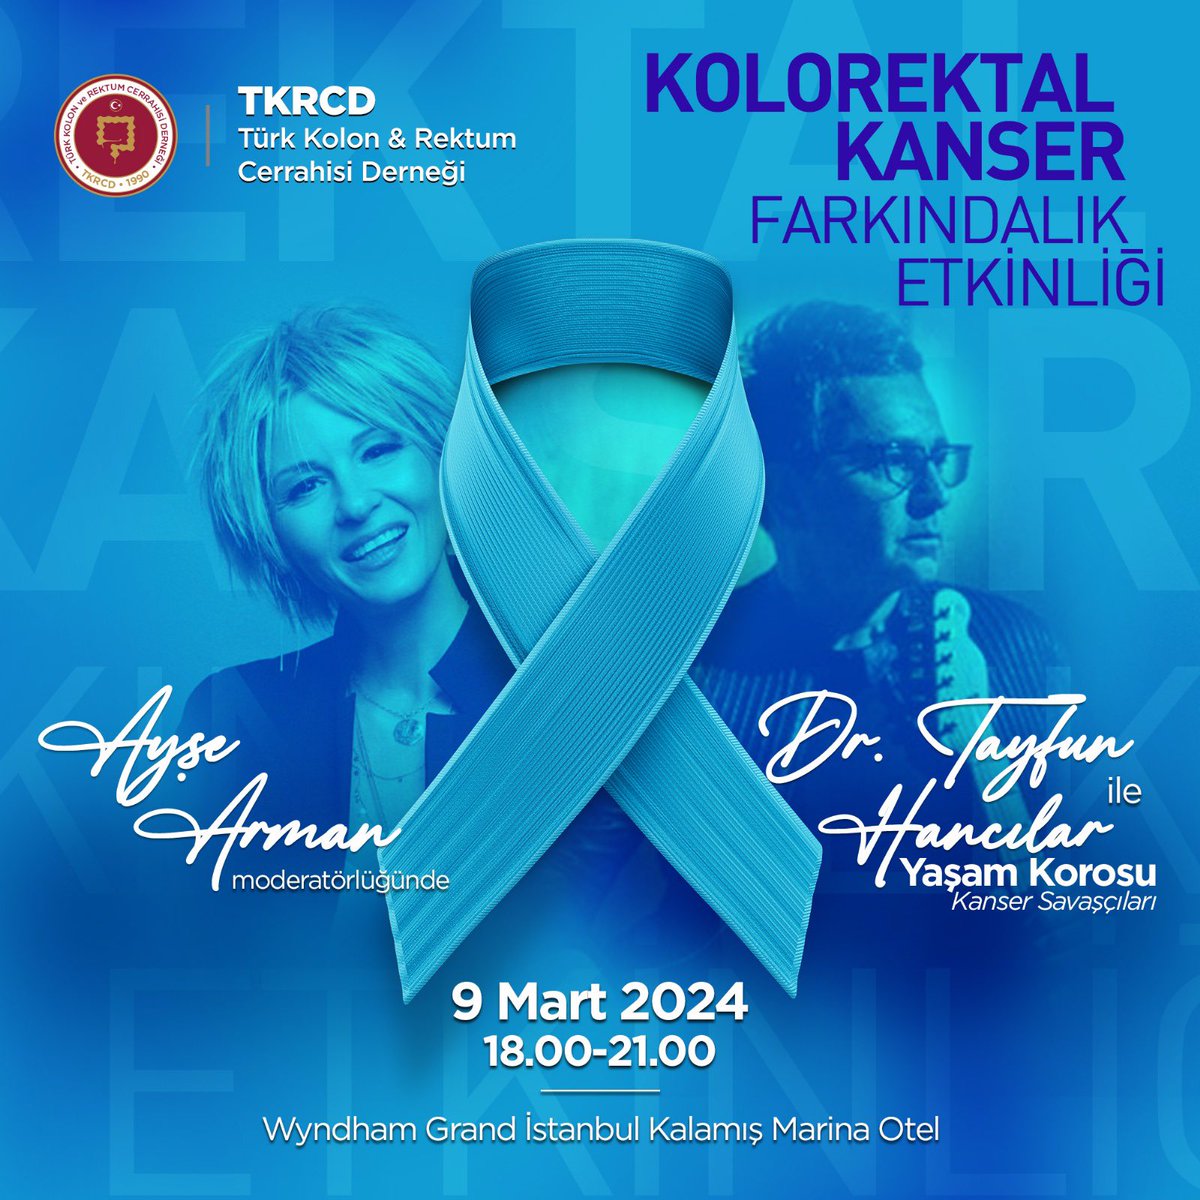 @TKRCD_ Kolorektal kanser farkındalık etkinlikleri…
#AyşeArman moderatörlüğünde söyleşi

Tolga Vardar yönetmenliğinde 
kanser savaşçıları Rock söylüyor…

9 Mart Cumartesi
18.00-21.00
Wyndham İstanbul Kalamış Otel
#SoMe4Surgery 

#ColorectalCancerAwarenessMonth